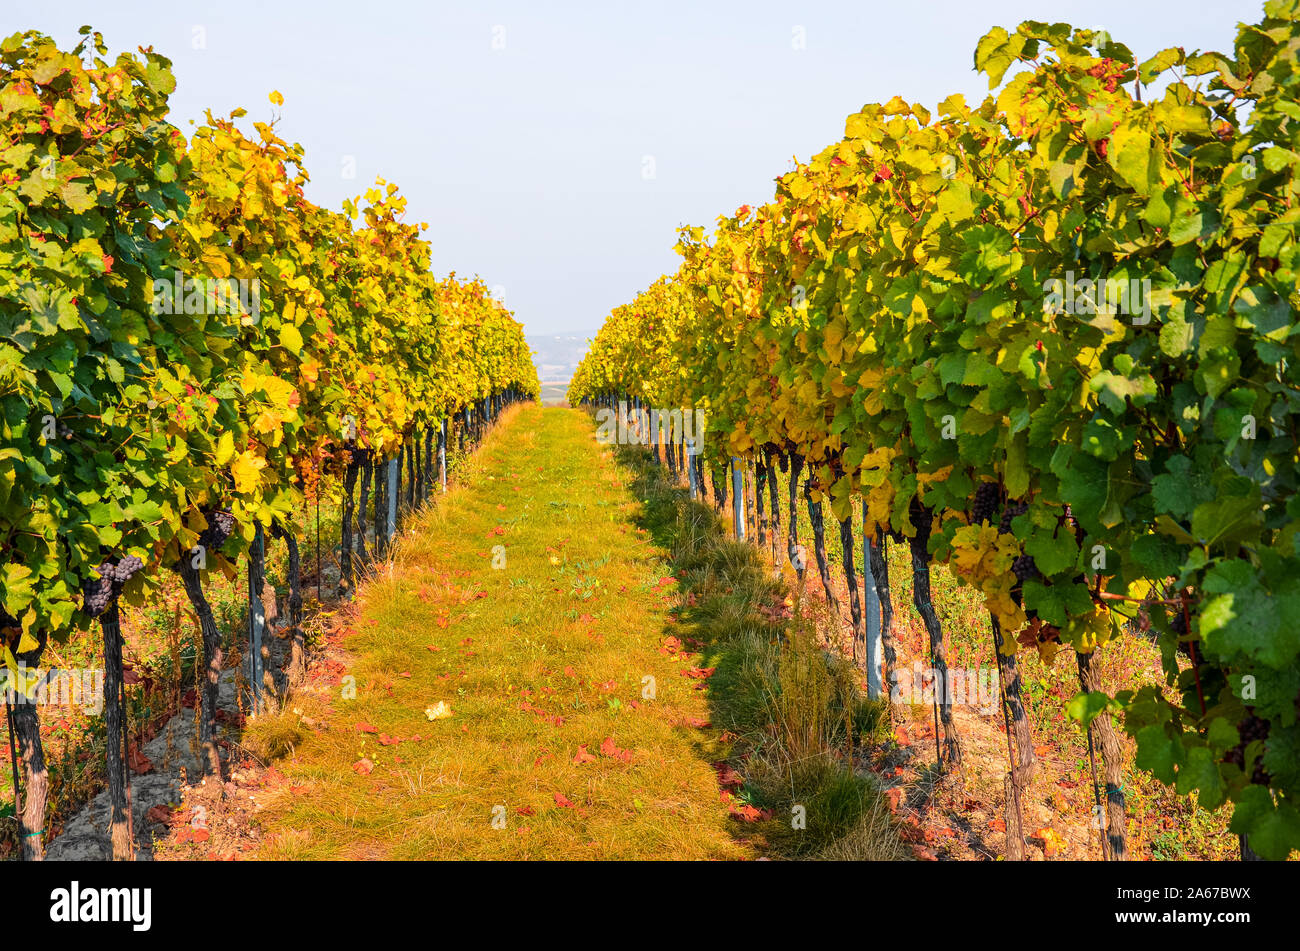 Vignoble d'automne avec des raisins du Pinot Gris. Vignes d'automne en jaune et orange, blanc alpin de premier ciel. Couleurs de la nature, les saisons de l'année. Photographié avant la récolte. Banque D'Images